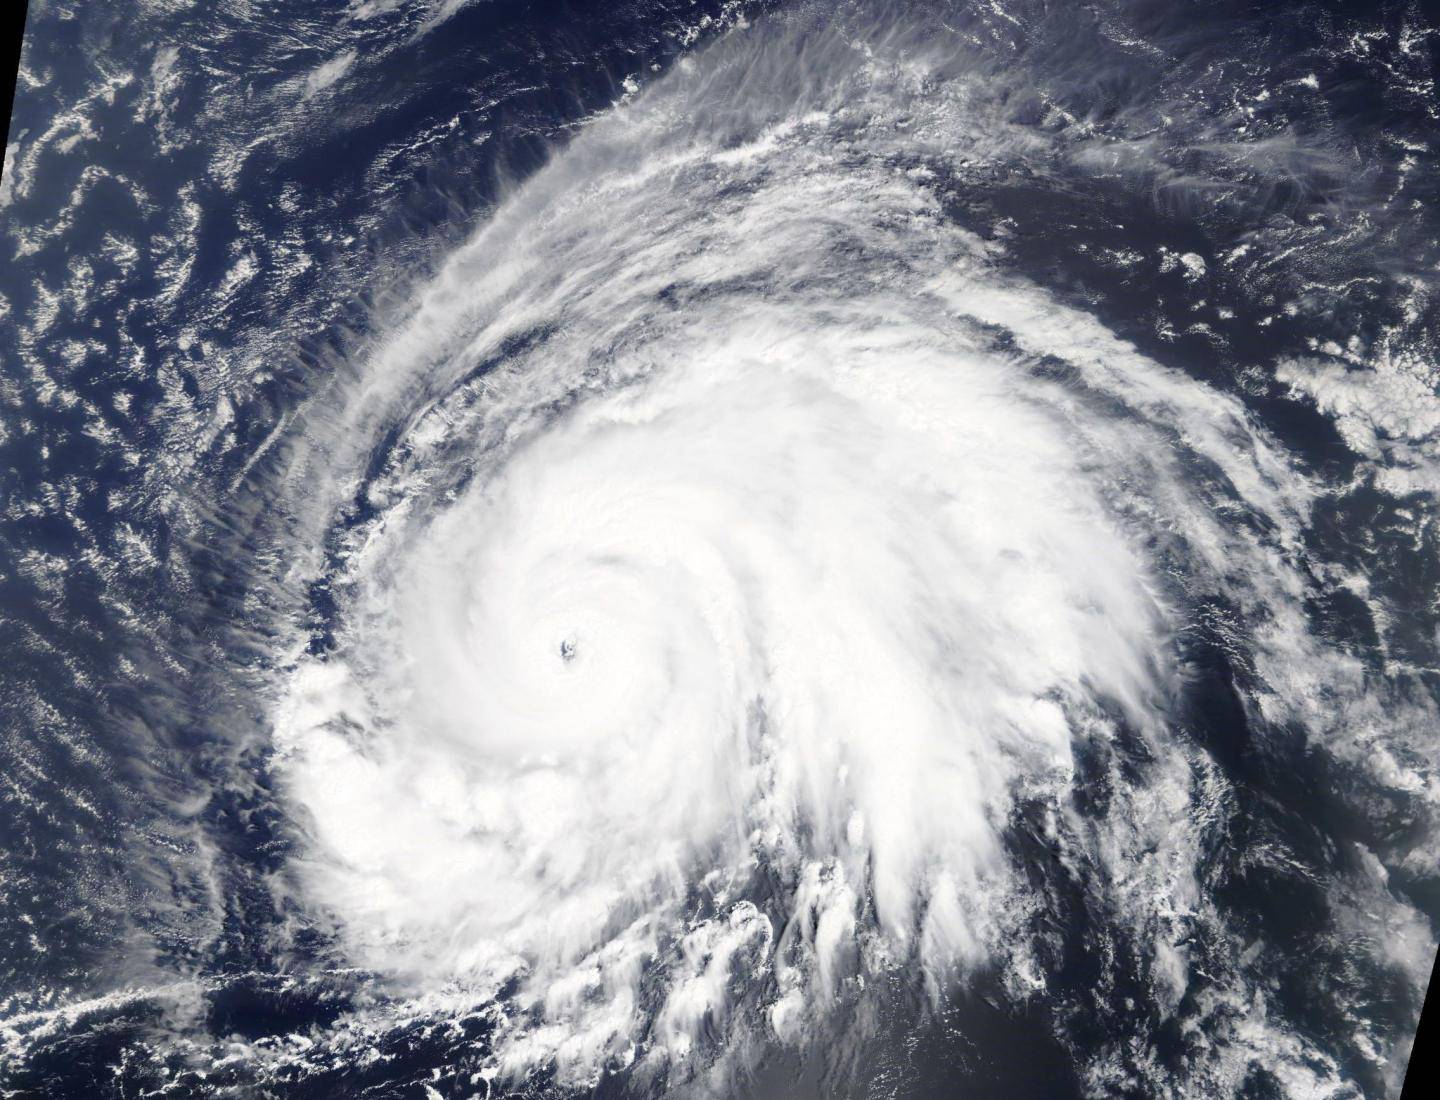 Razorni uragani postali triput češći zbog klimatskih promjena